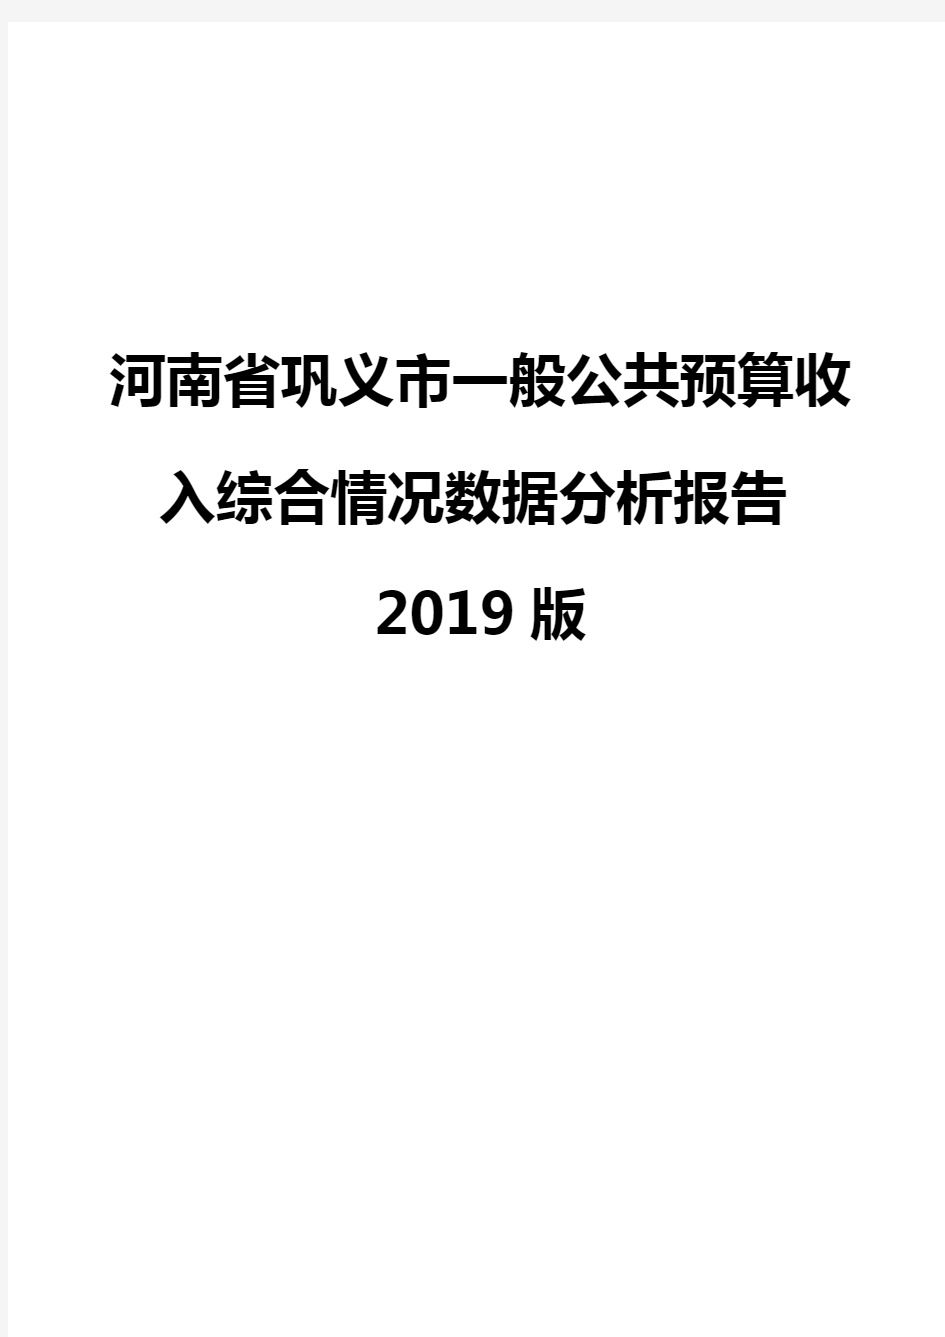 河南省巩义市一般公共预算收入综合情况数据分析报告2019版